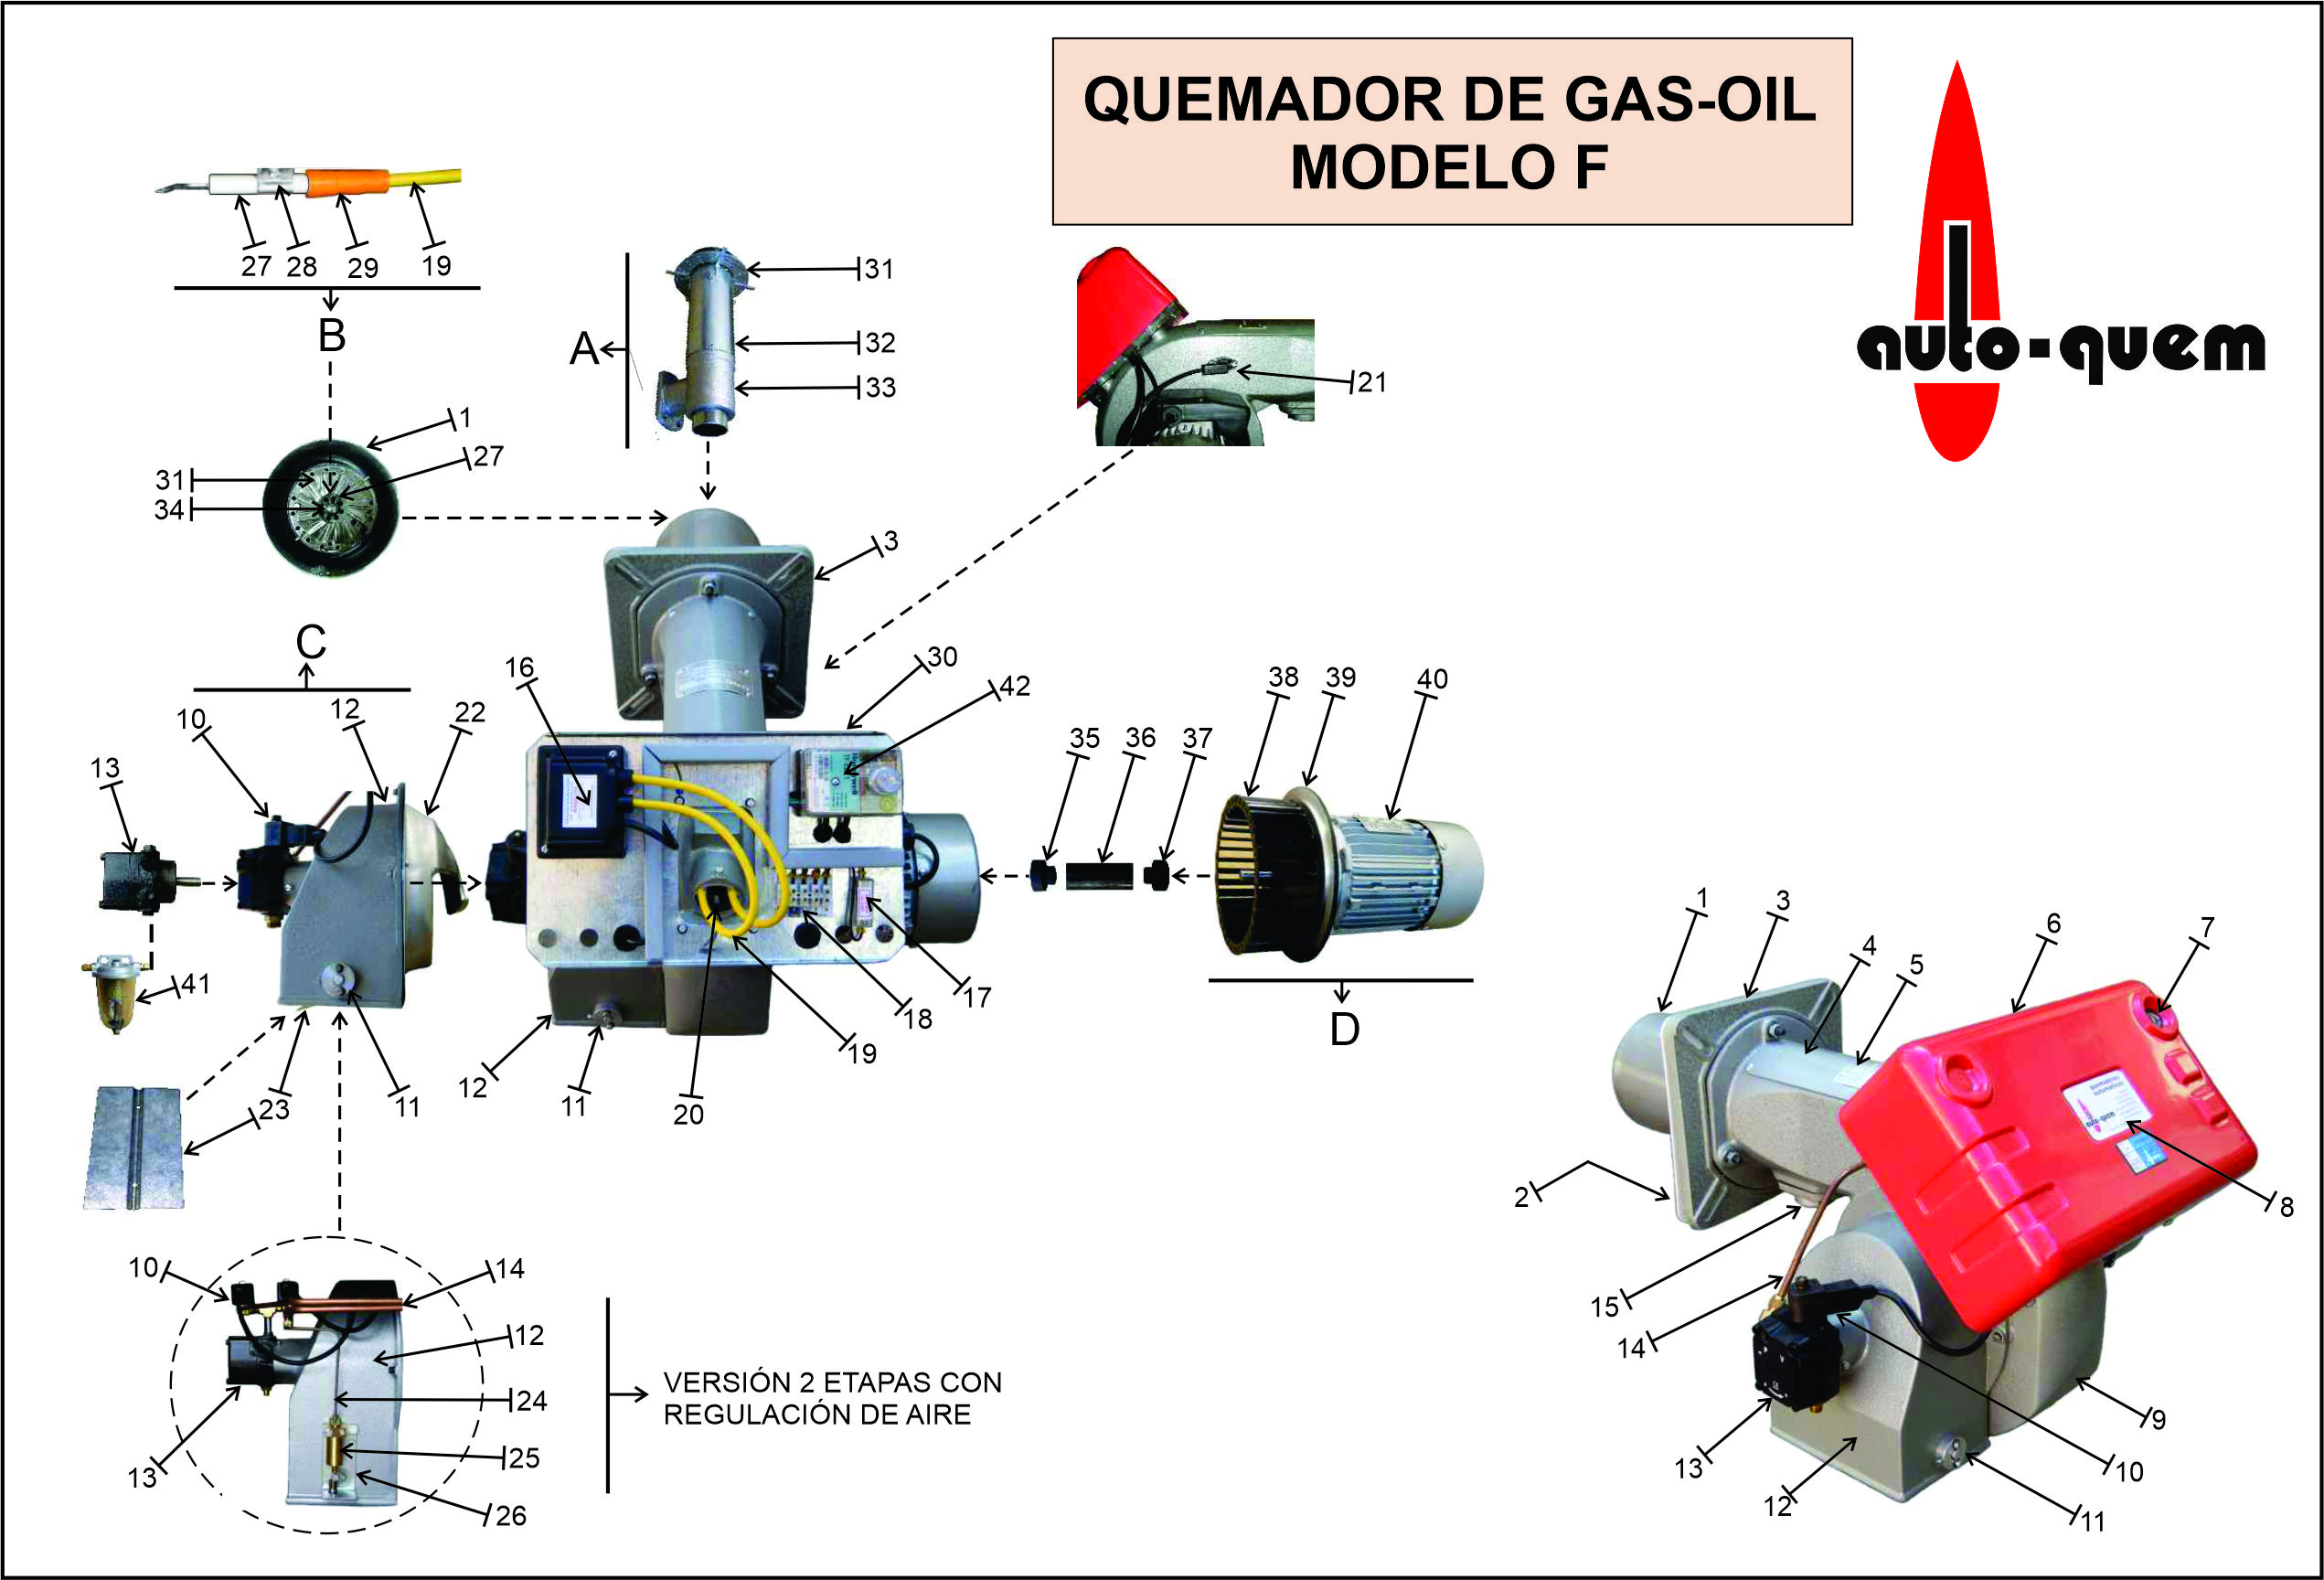 Tienda Online de Auto-quem SA - Quemador F-GAS OIL